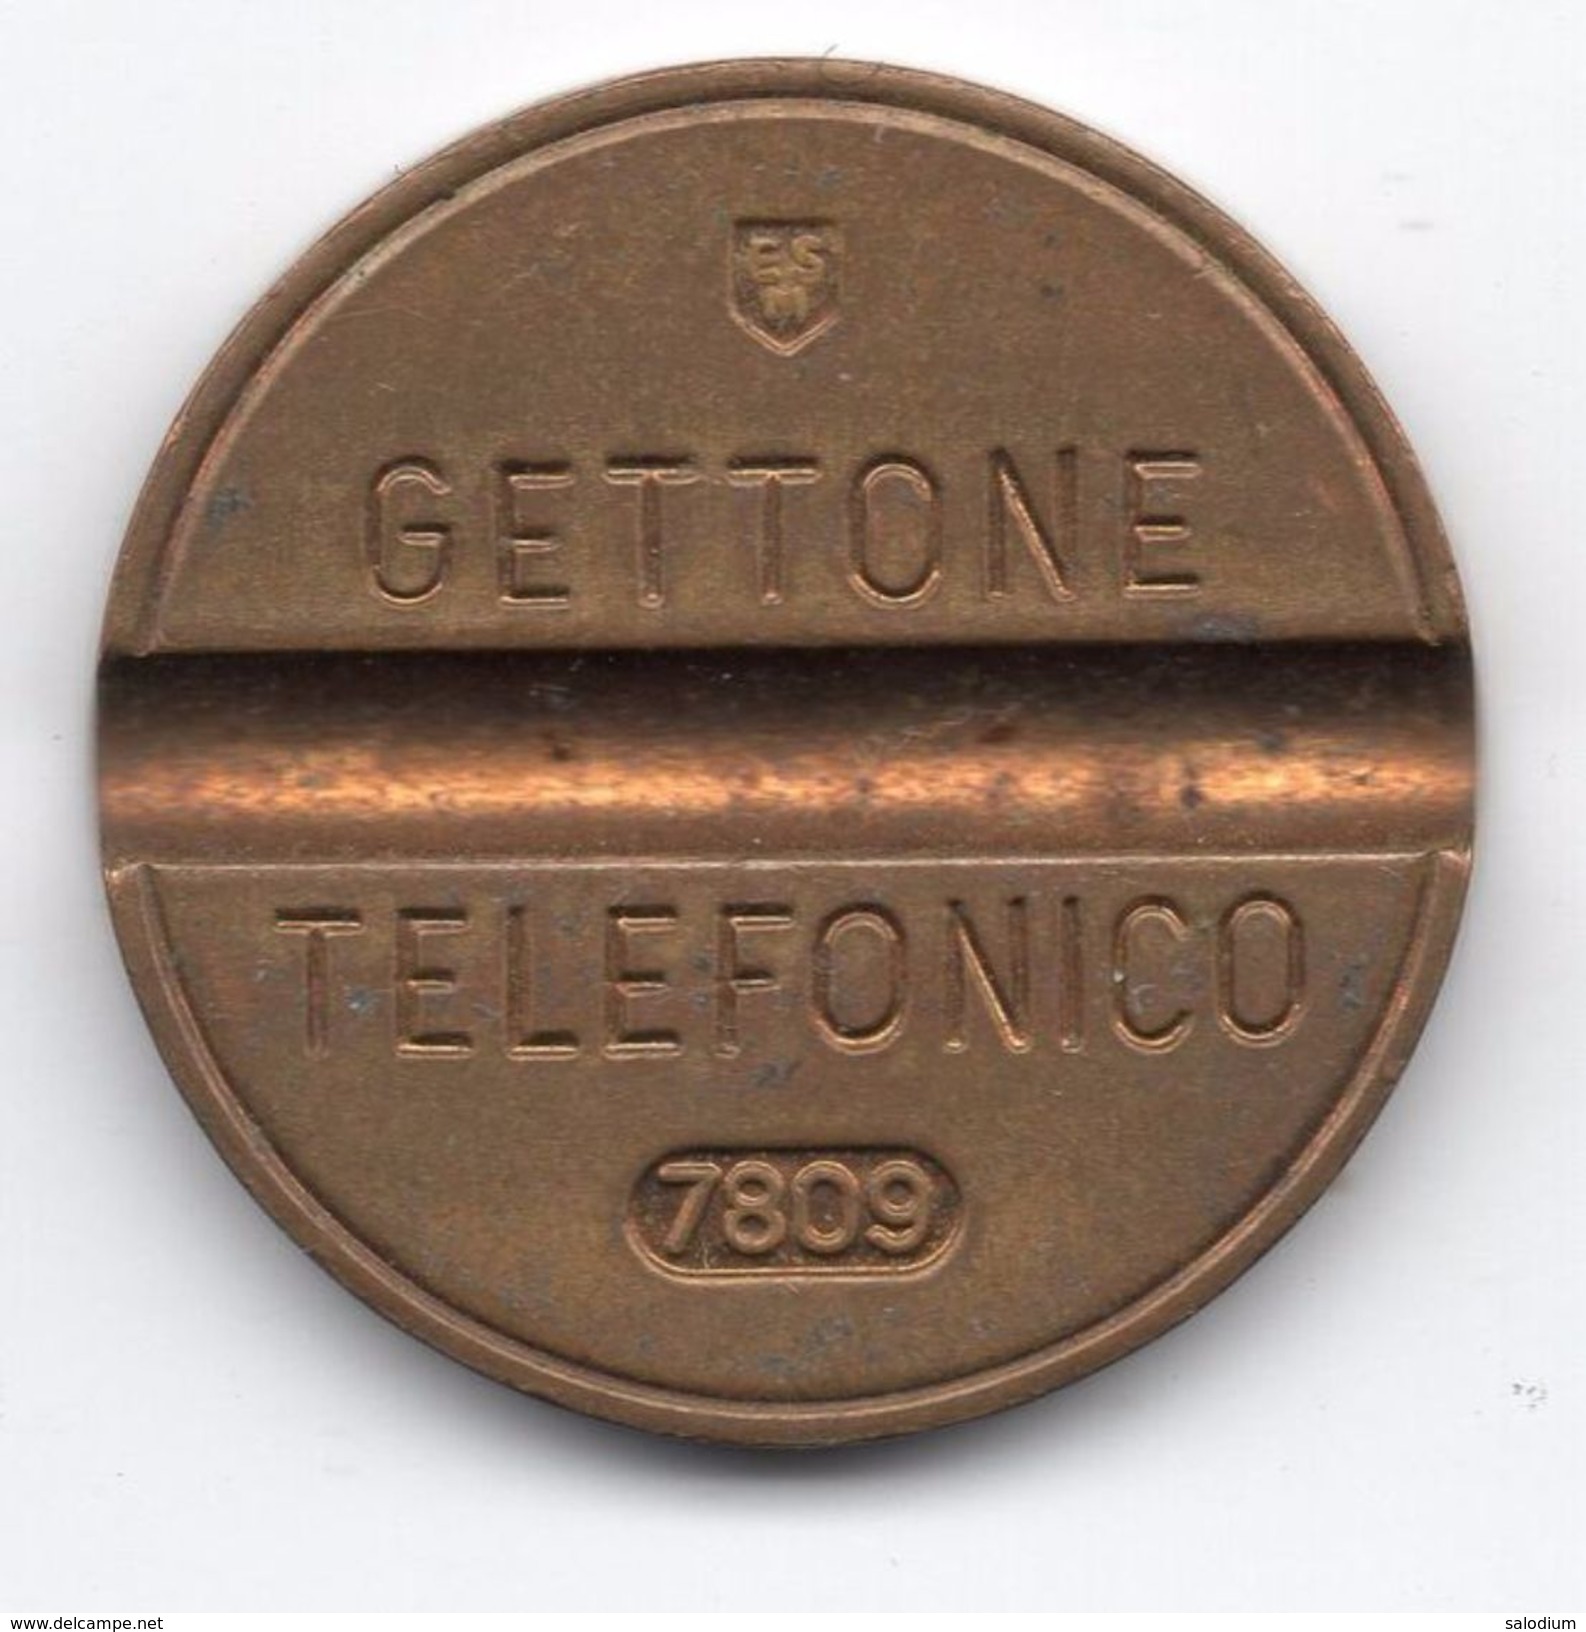 Gettone Telefonico 7809 Token Telephone - (Id-661) - Professionnels/De Société